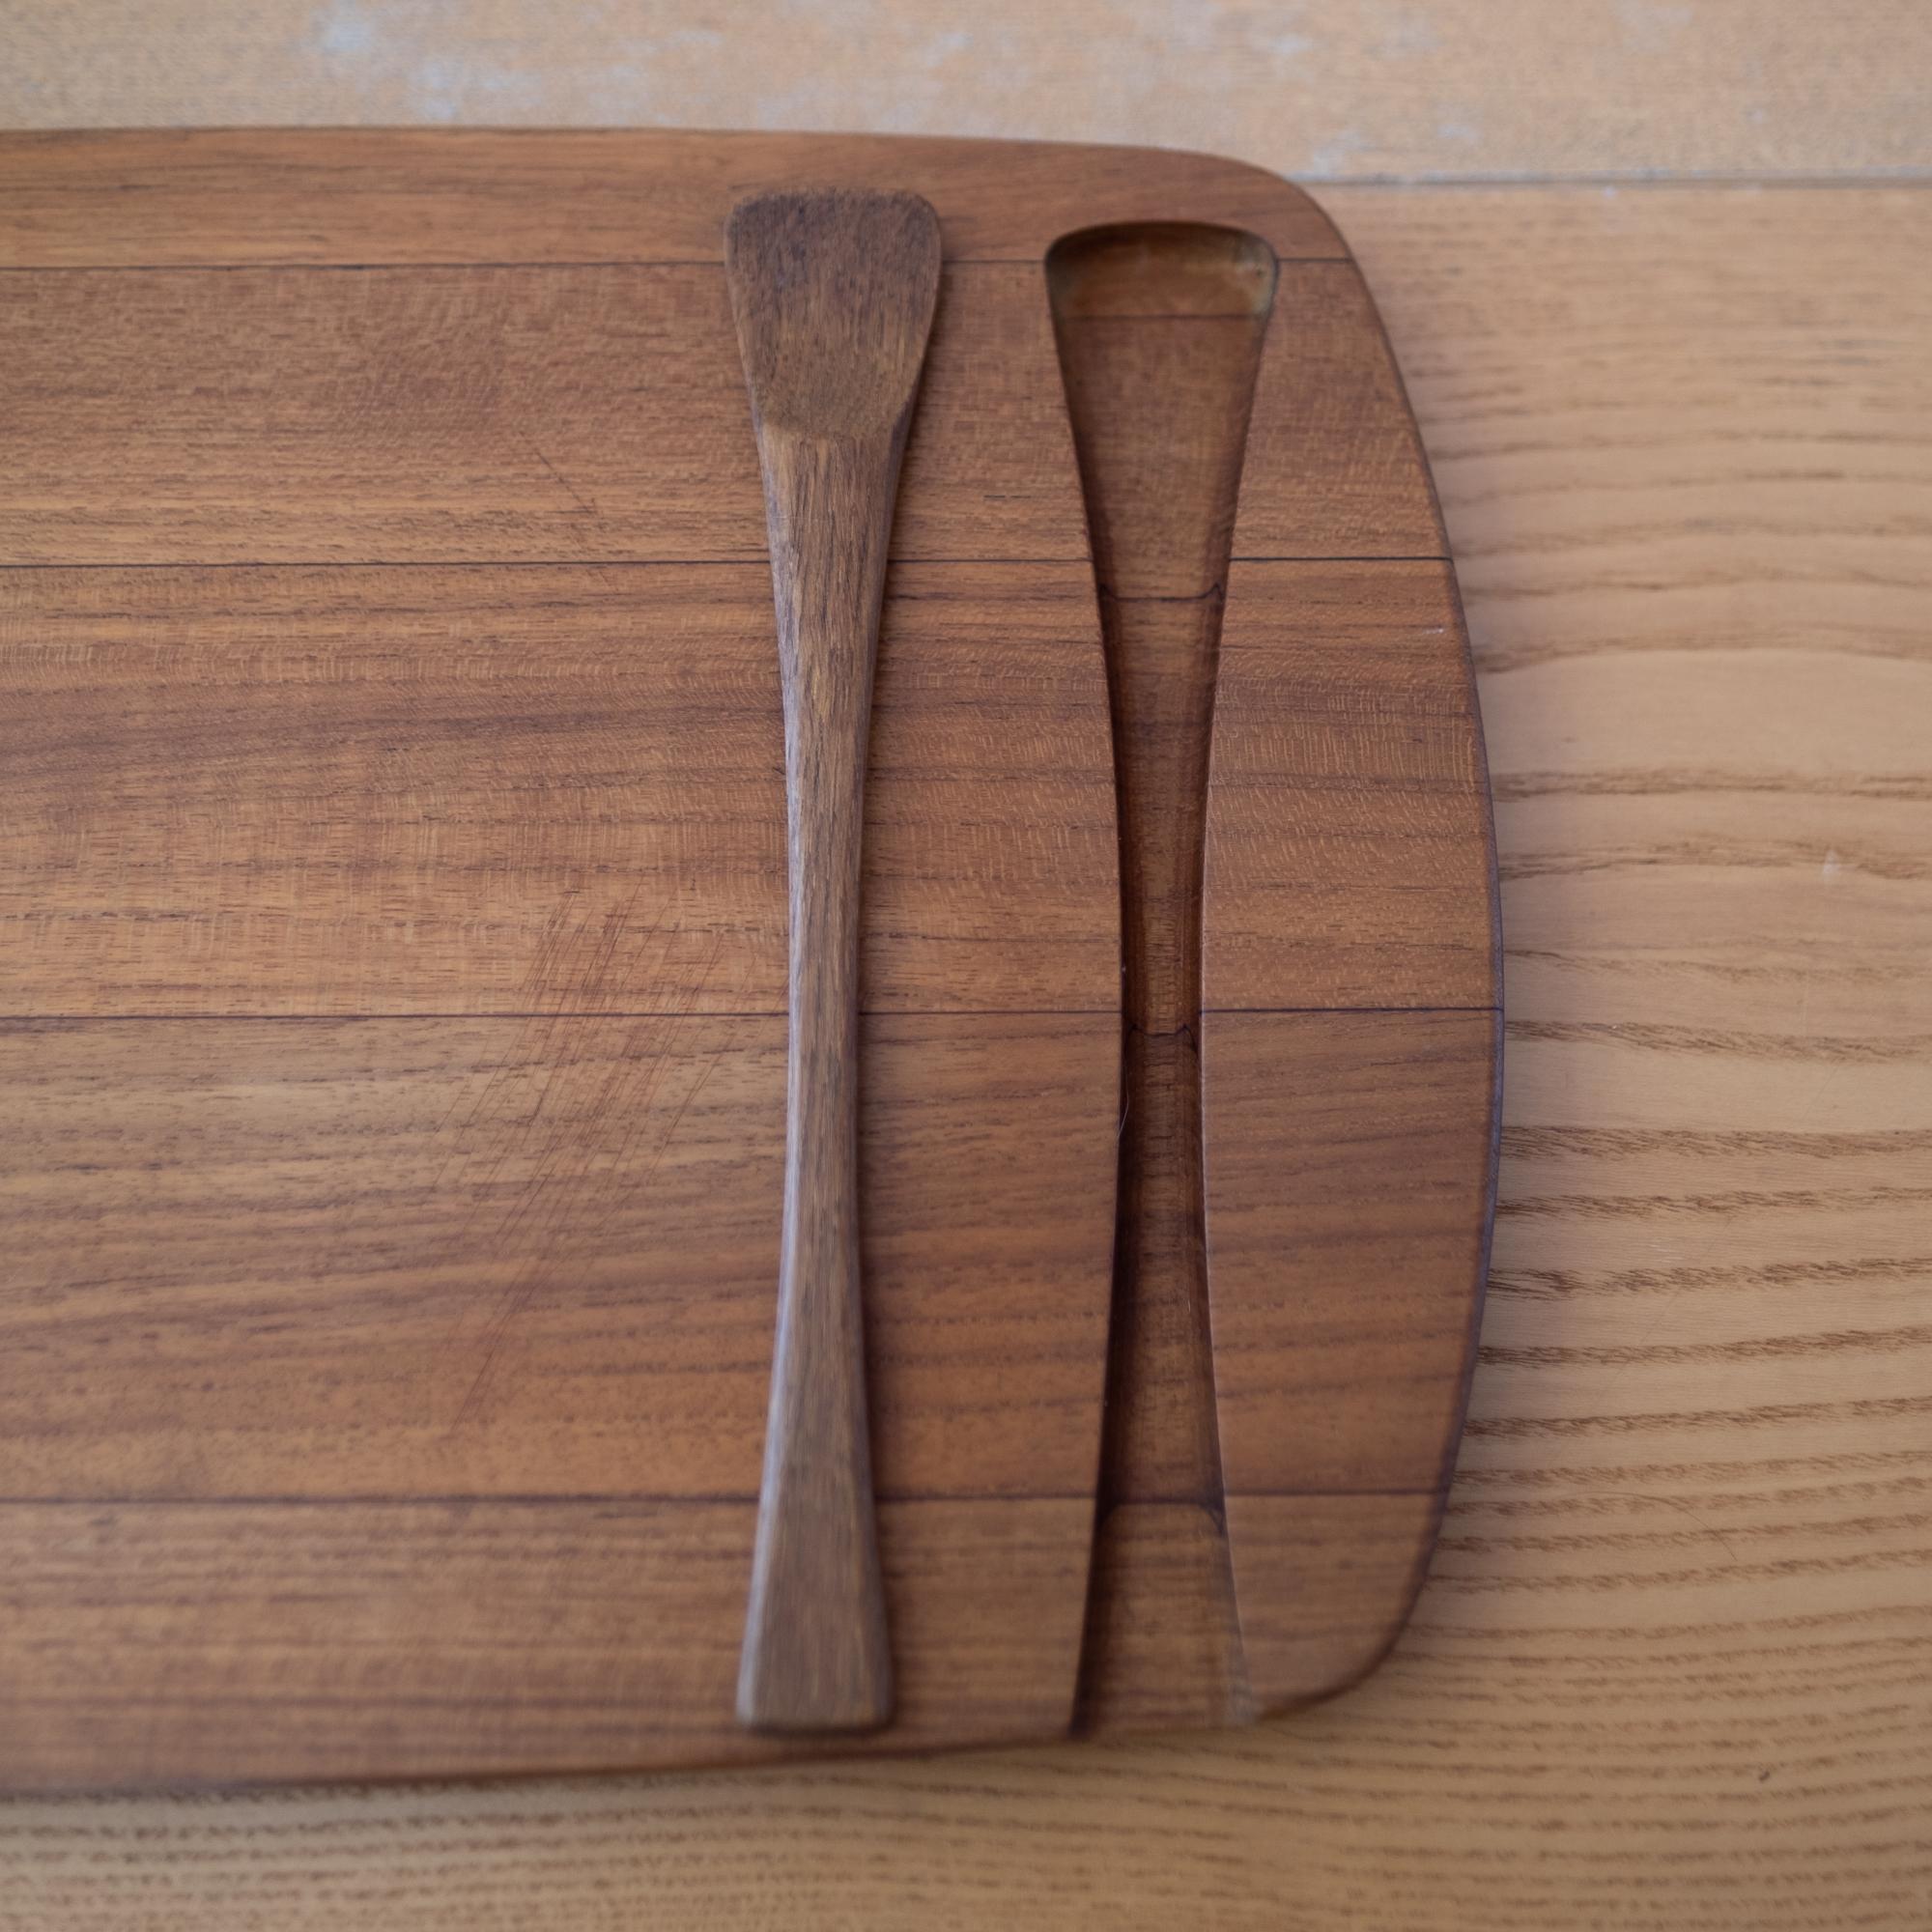 Scandinavian Modern Early Dansk Serving Tray with Spoon by Jens Quistgaard